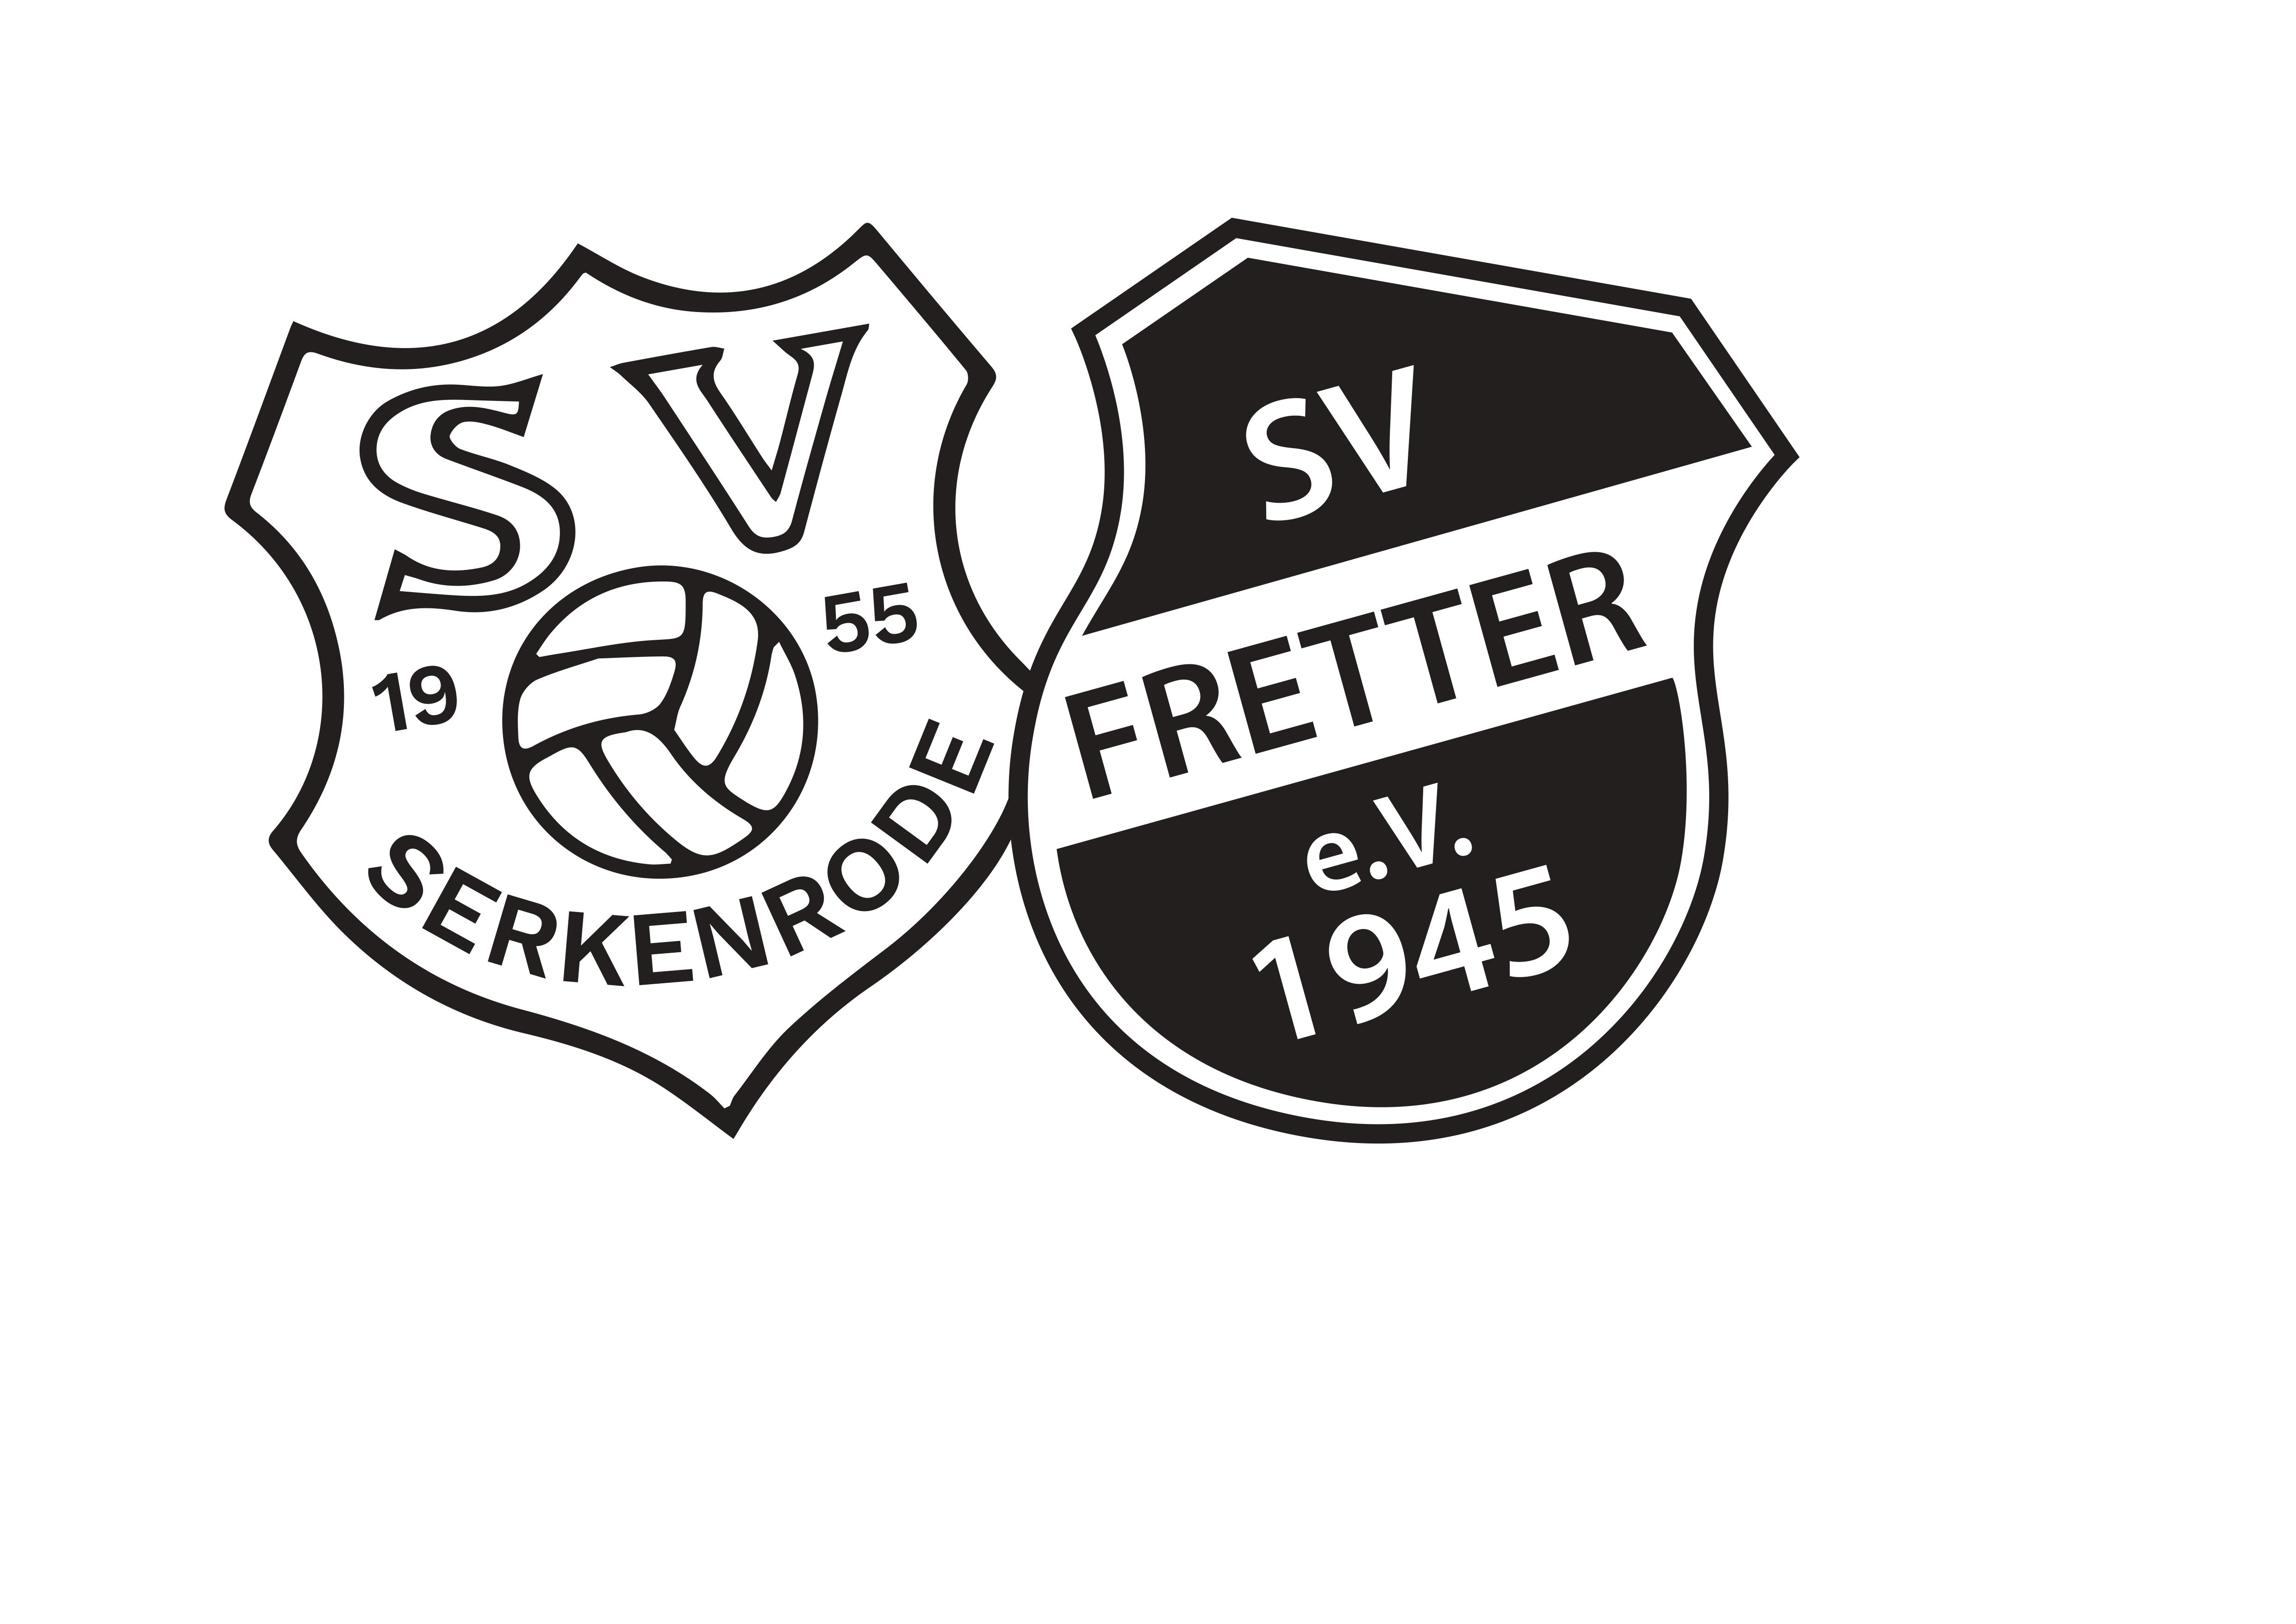 SG Serkenrode Fretter Logo